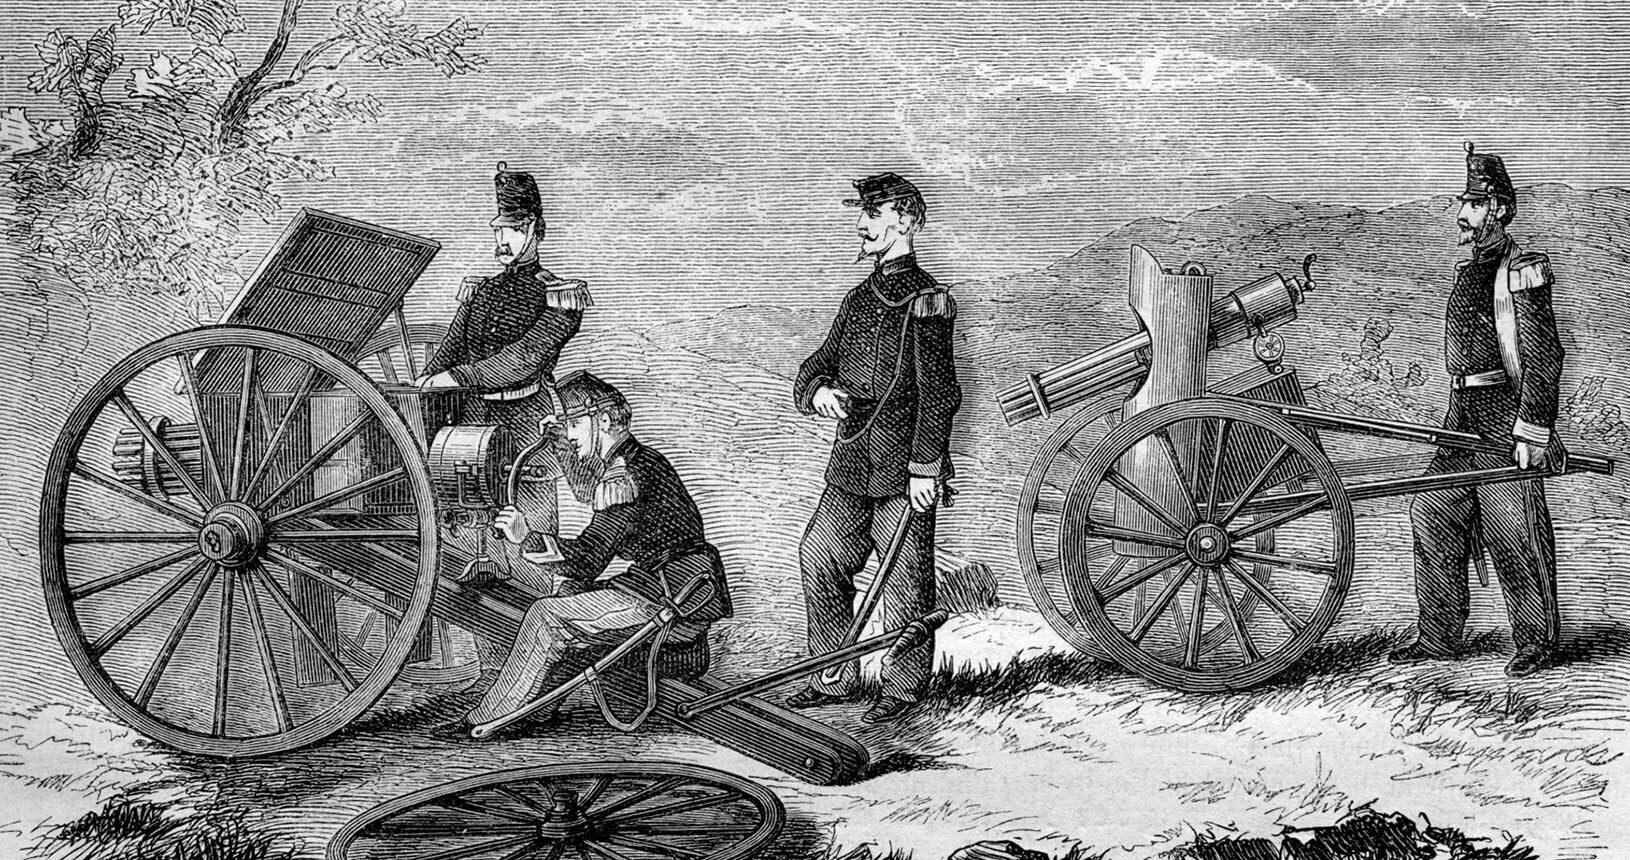 Einsatz der Mitrailleuse, eines der ersten Maschinengewehre, im Deutsch-Französischen Krieg, Illustration aus Zeitschrift "Alte und neue Welt" (1871) - Public Domain